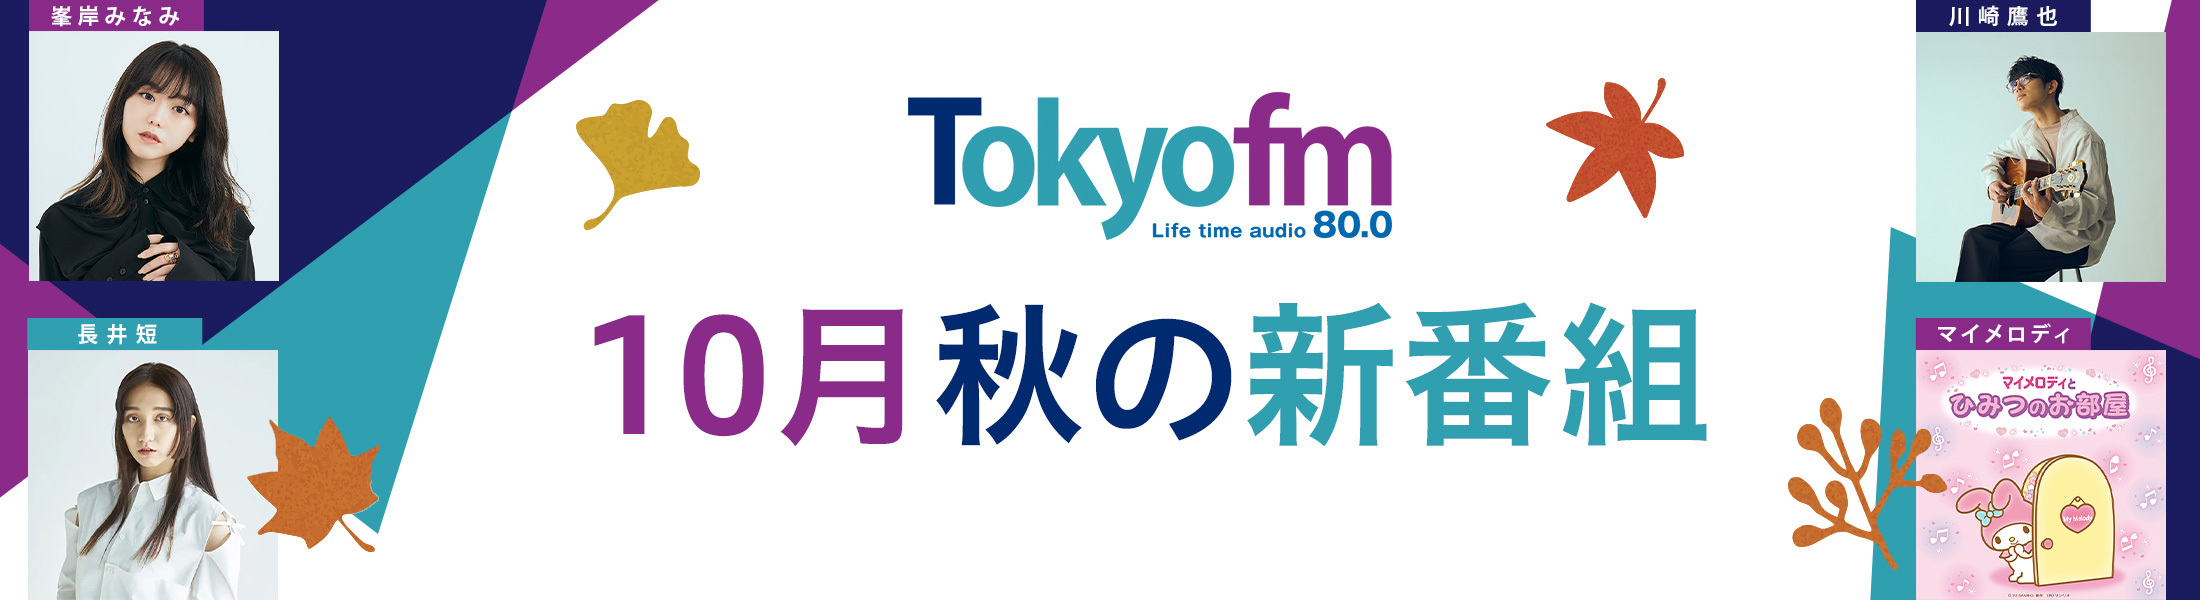 TOKYO FM新番組情報